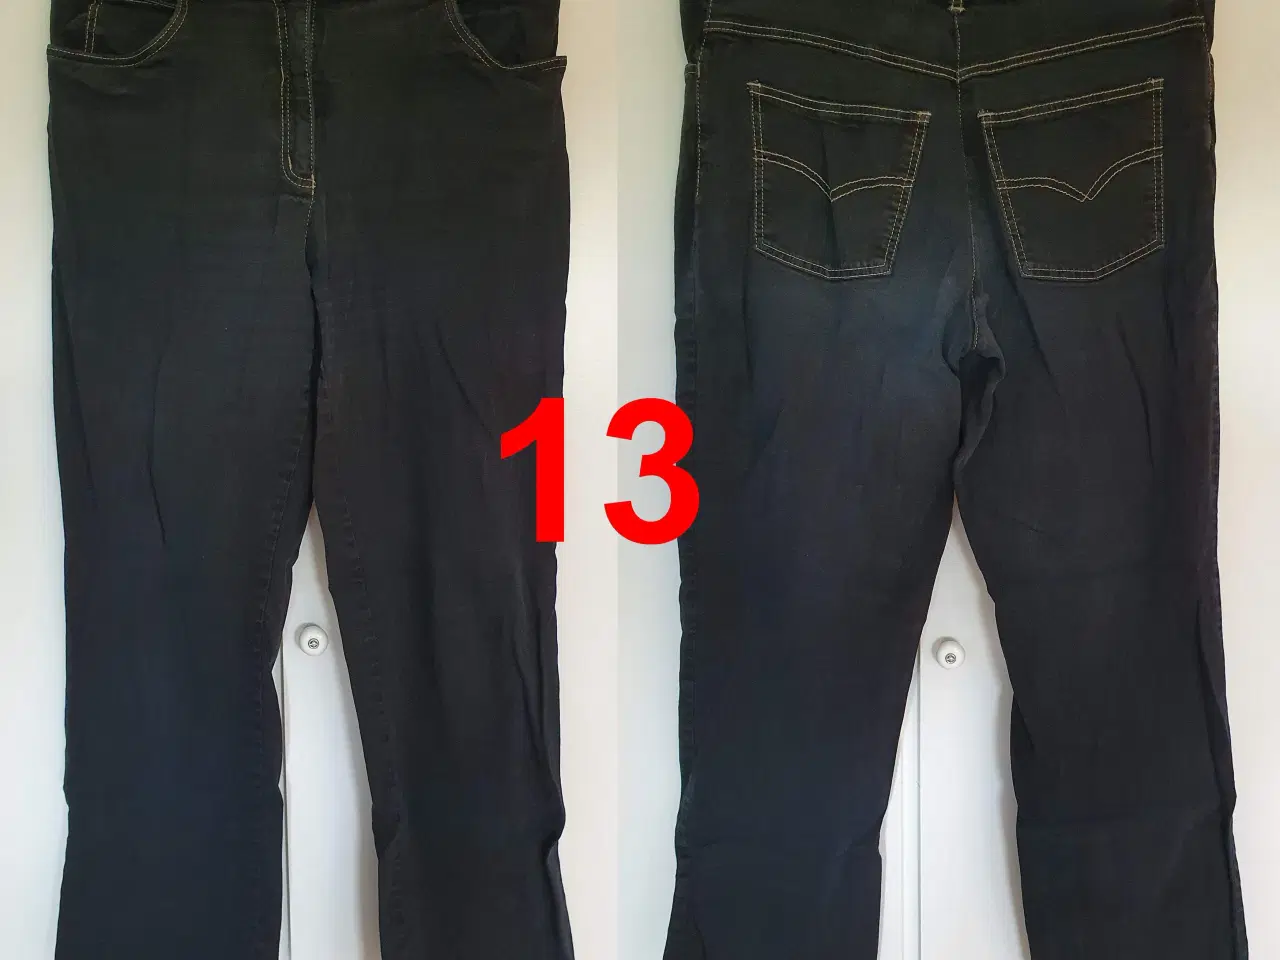 Billede 2 - Bukser / jeans i stakkevis til ingen penge - DEL 3